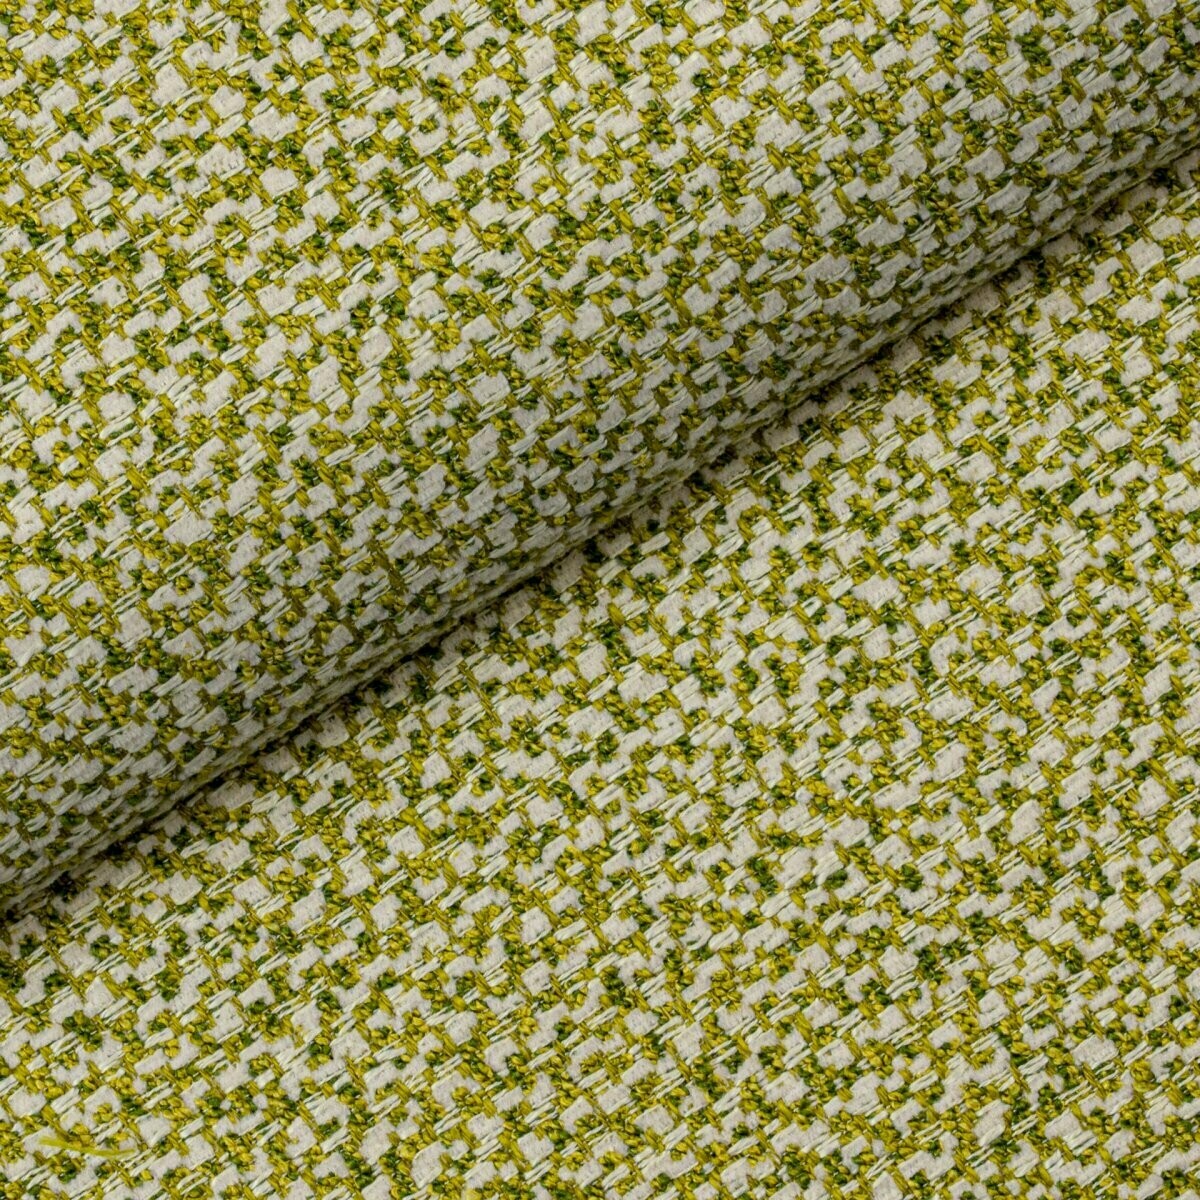 Wyjątkowa tkanina Nebbia 10 Fargotex w kolorze żółtym z elementami zieleni. Jej niespotykana barwa stanowi cechę charakterystyczną tej tkaniny.